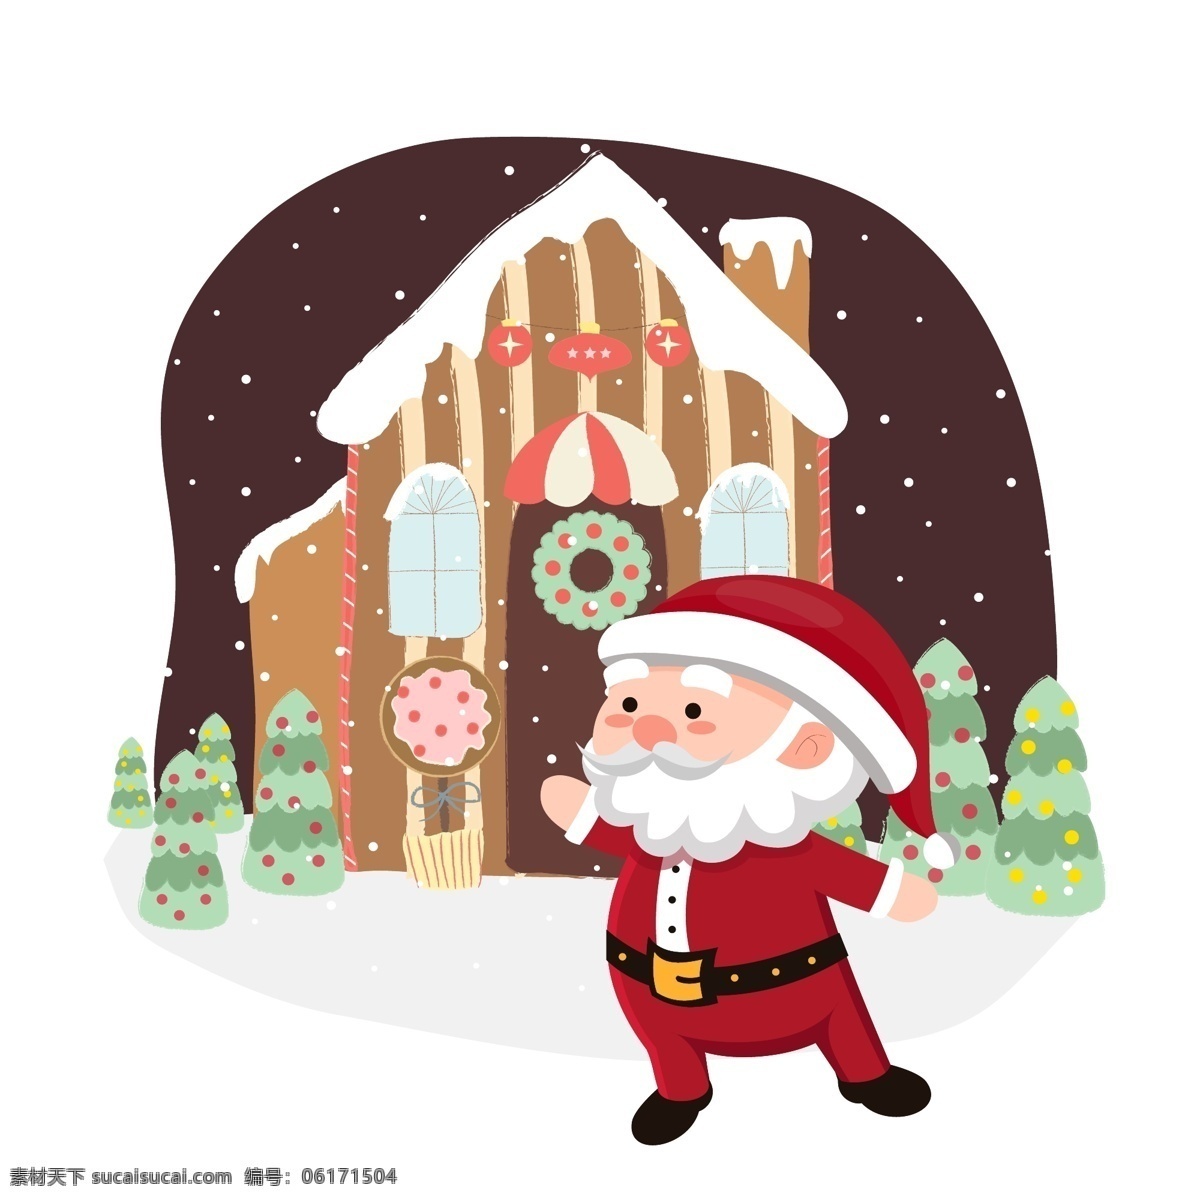 圣诞节 冬季 冬天 手绘 插画 圣诞老人 房子 手绘插画